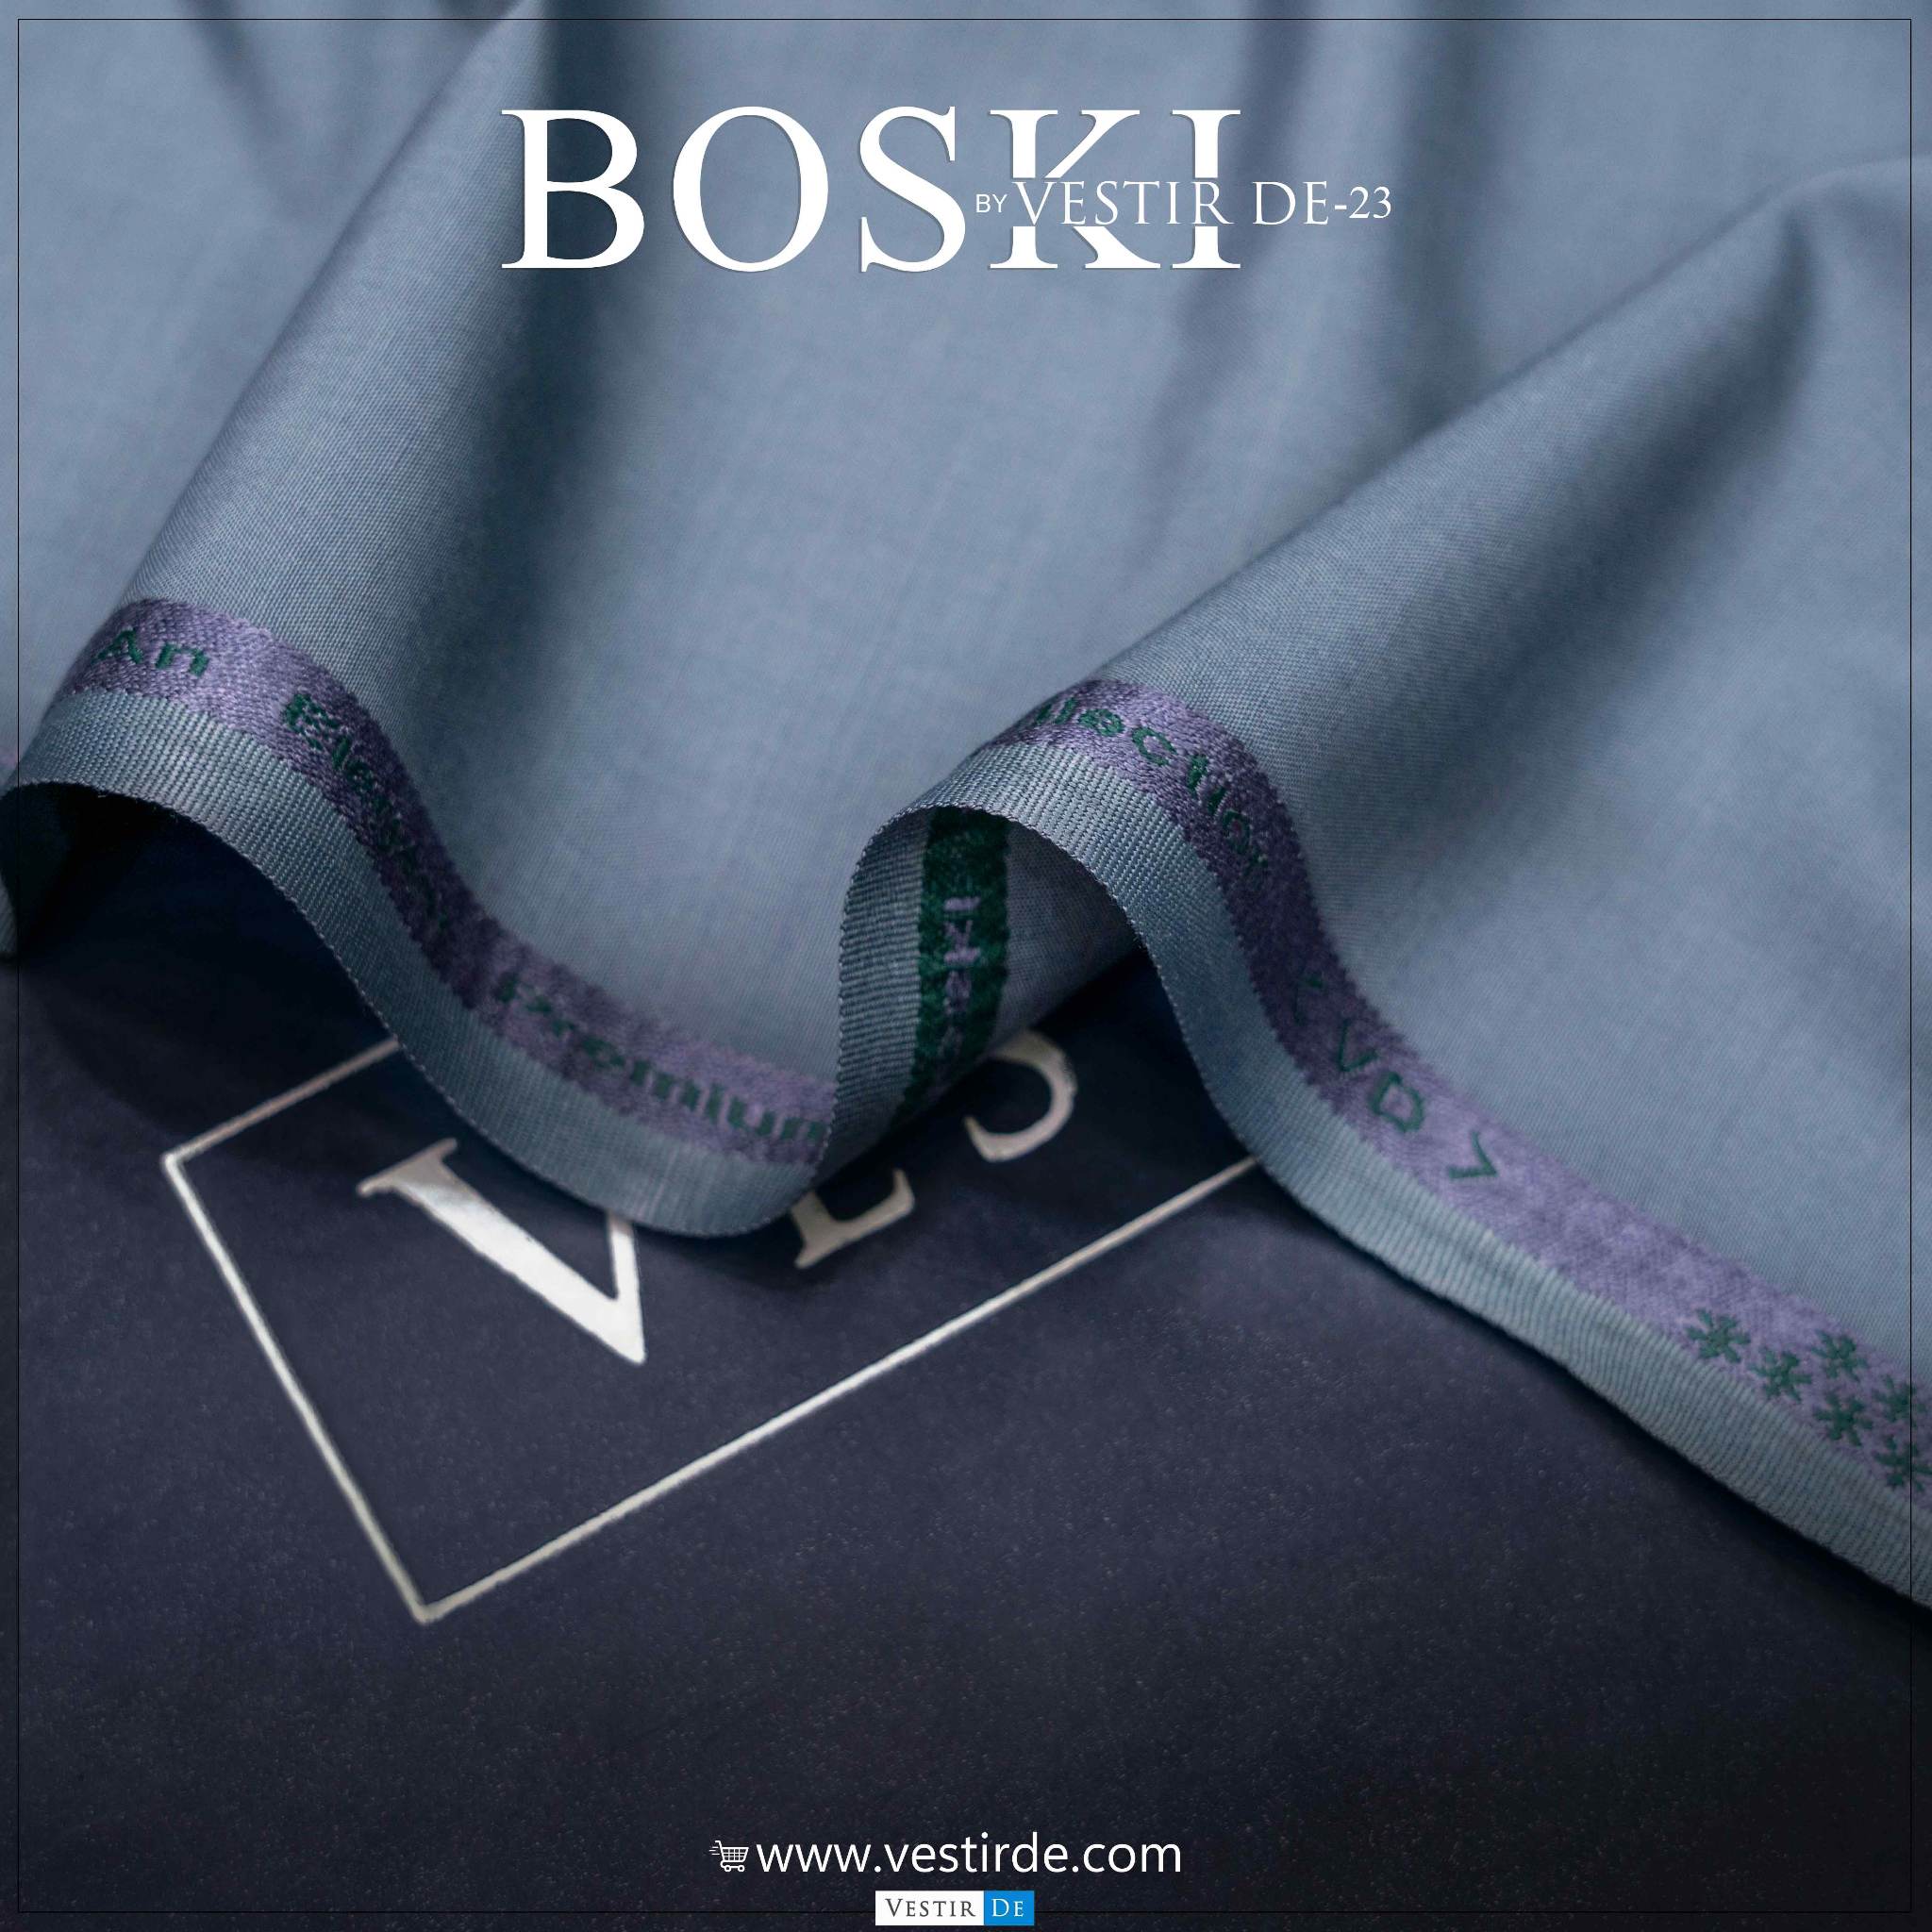 Boski By Vestir De 23